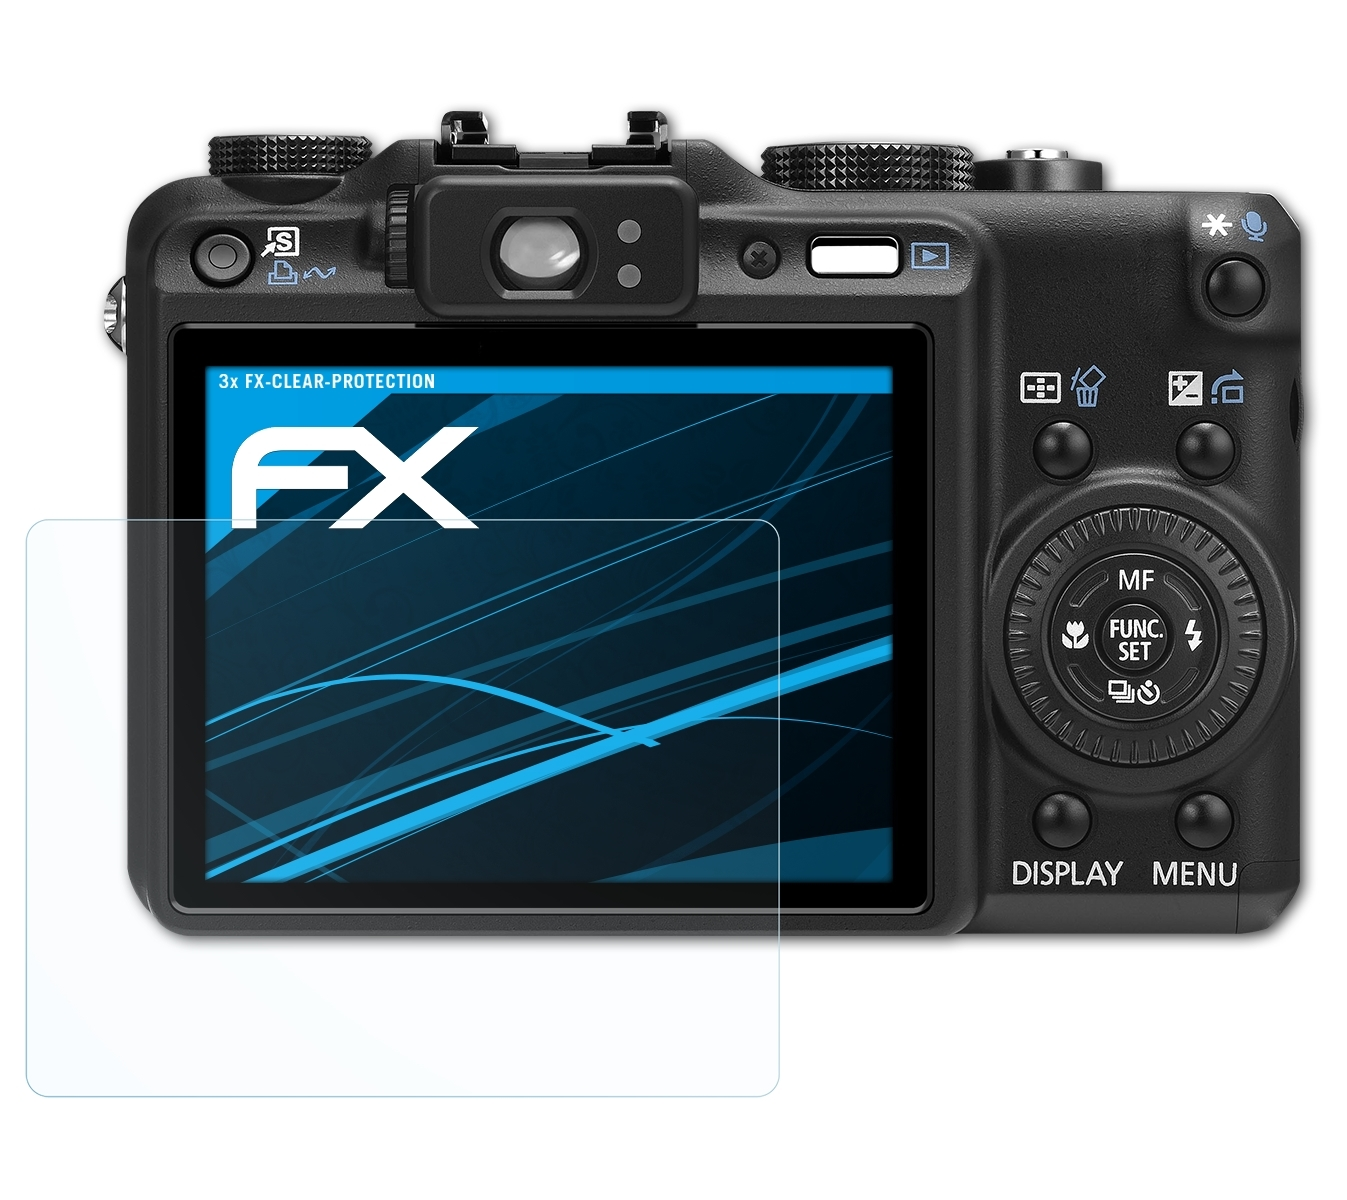 Displayschutz(für G9) FX-Clear ATFOLIX PowerShot Canon 3x